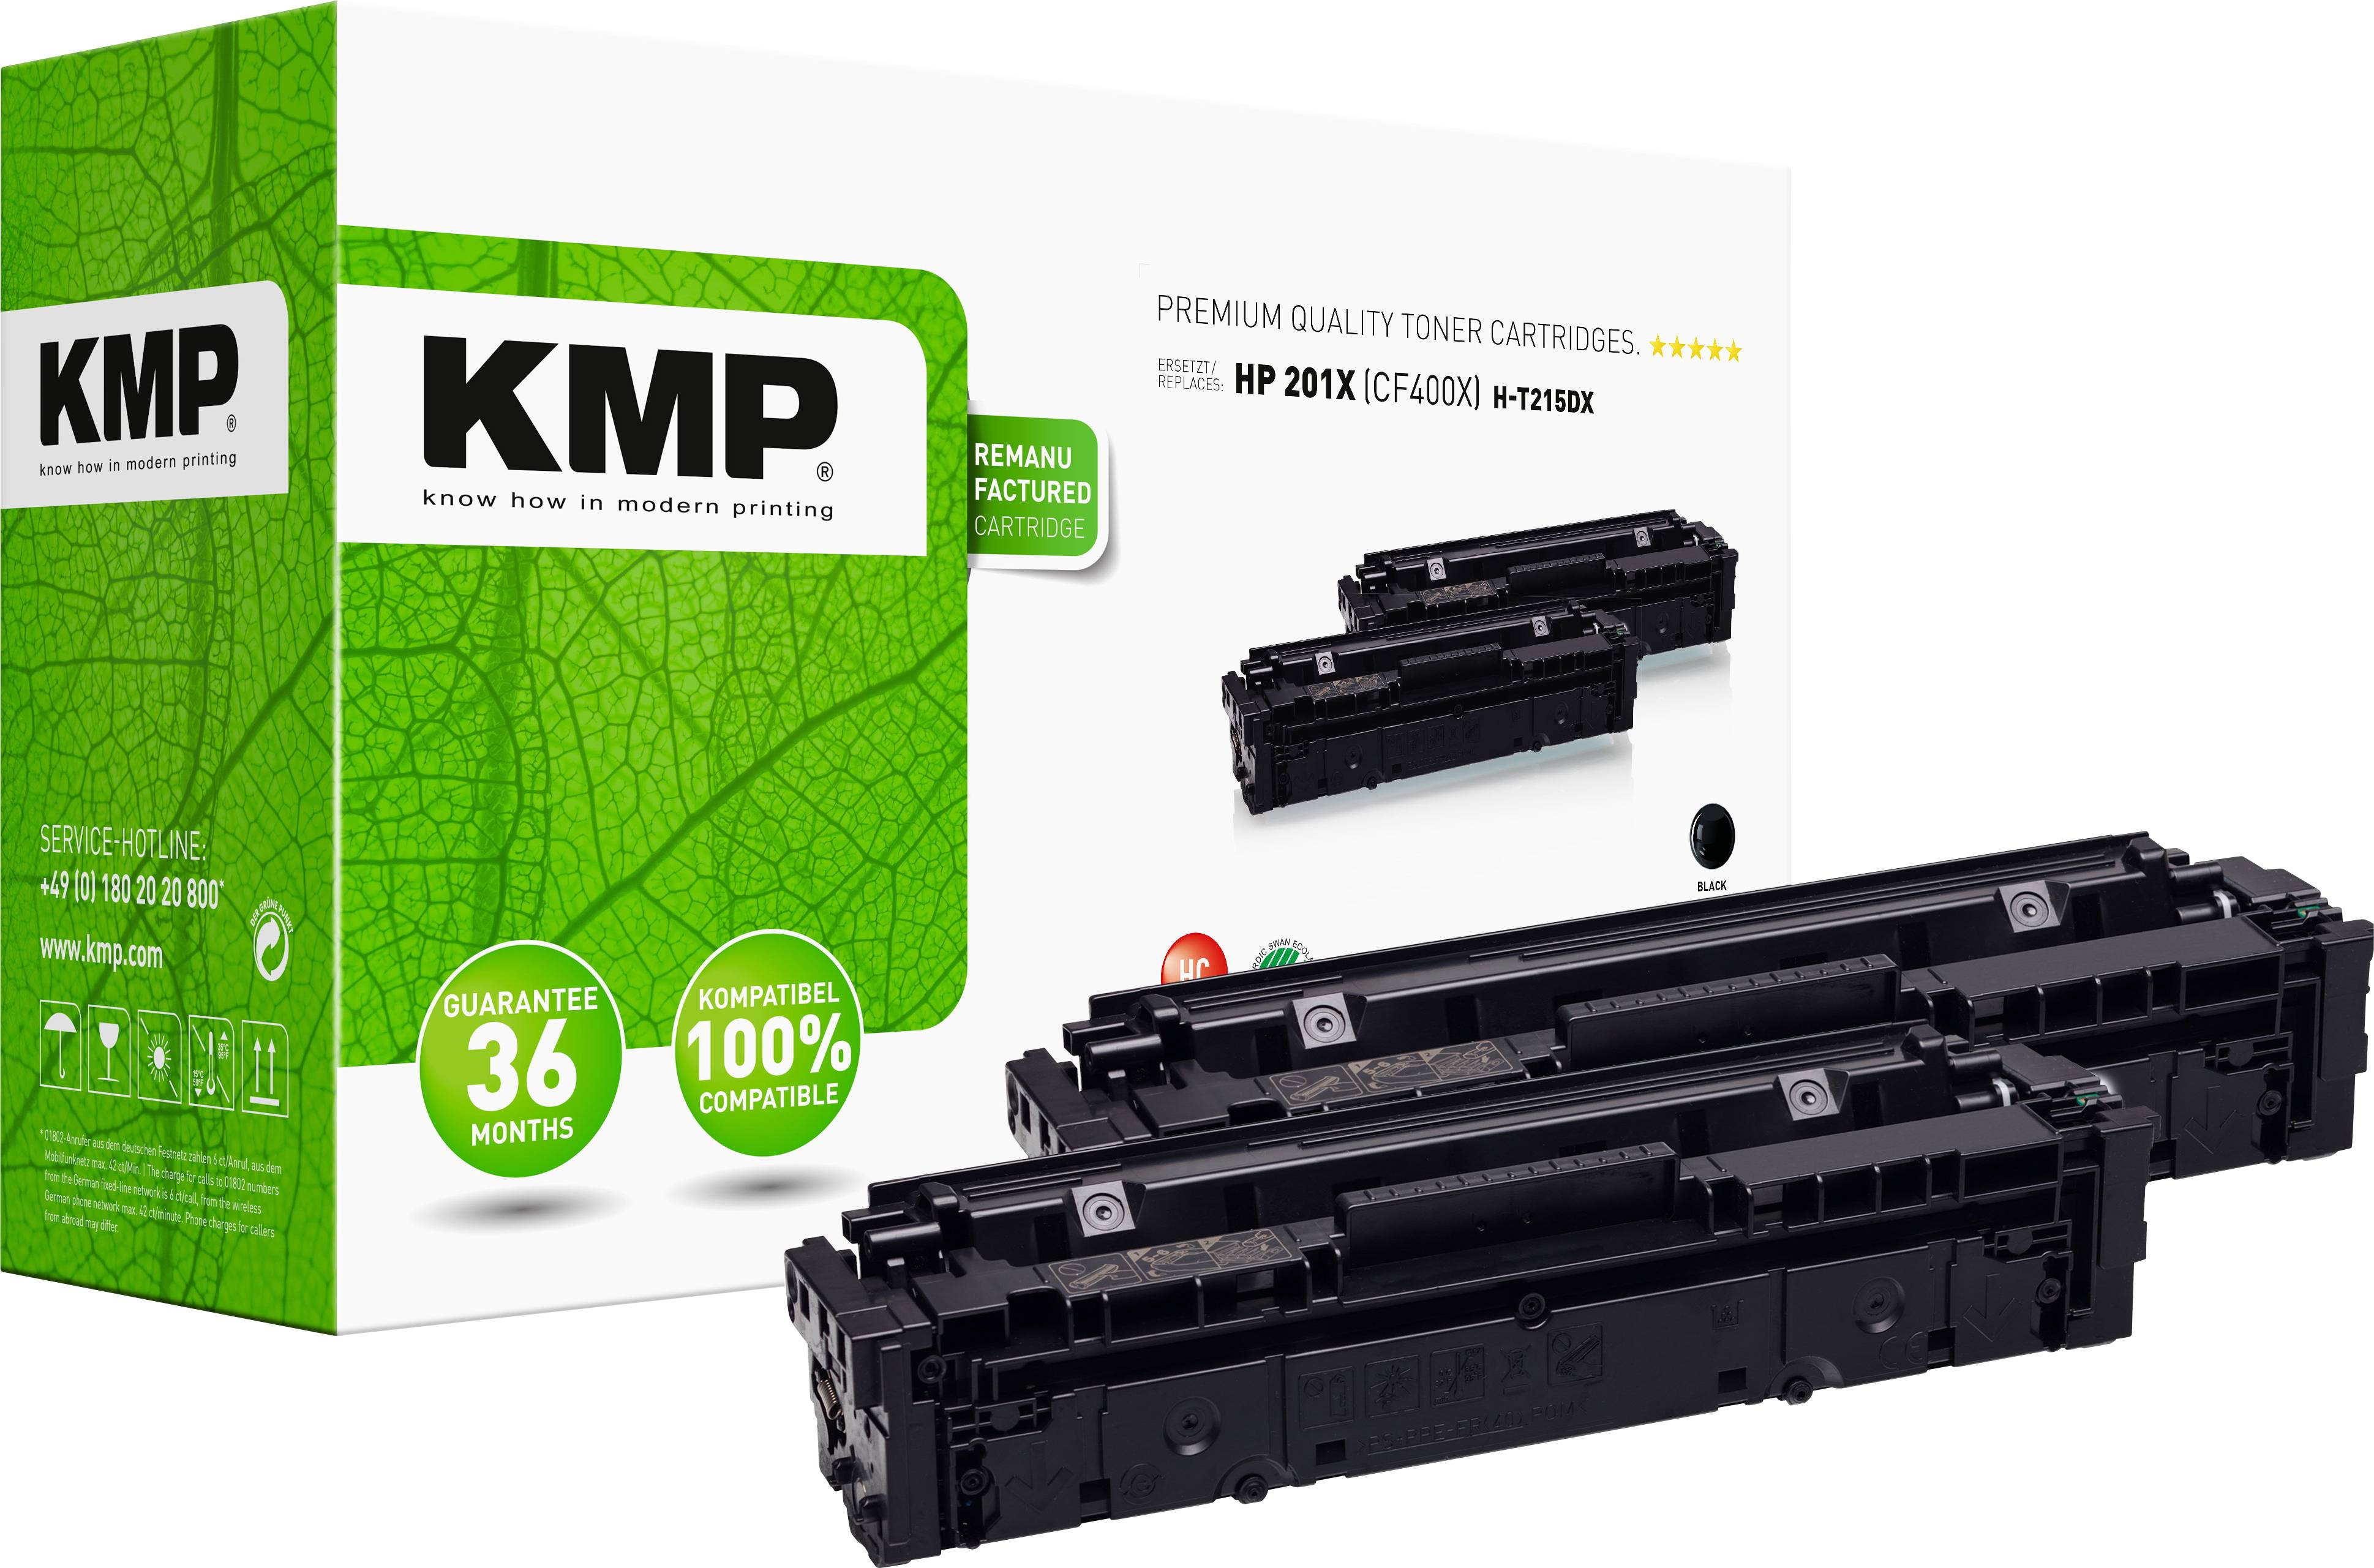 KMP Tonerkartusche ersetzt HP 201X (CF400X)